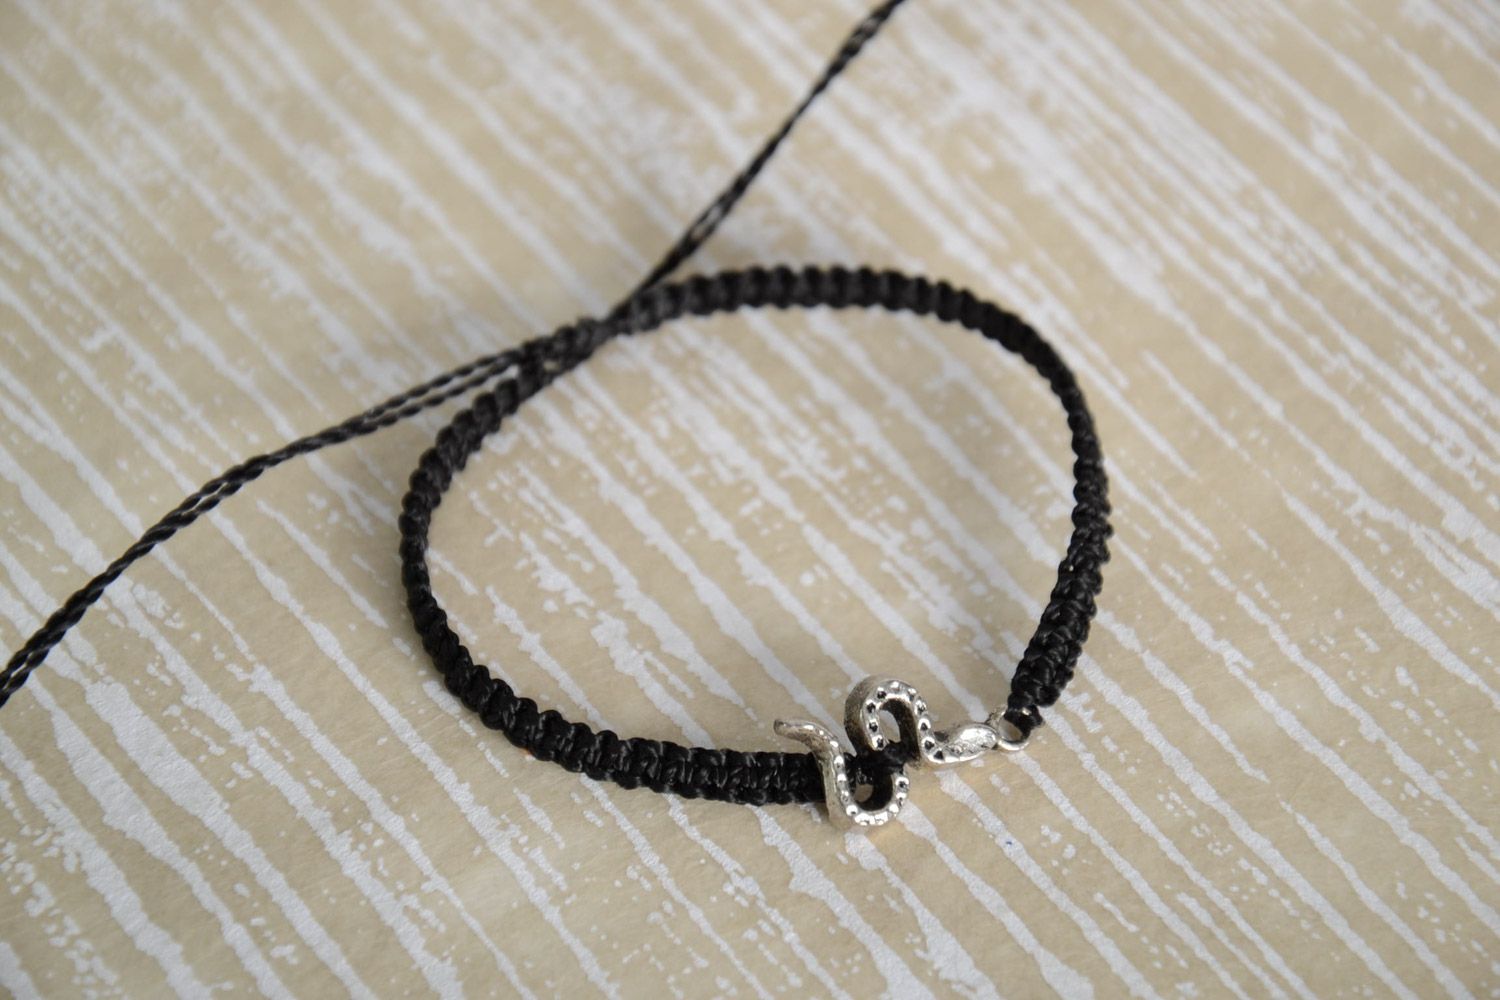 Handmade black macrame woven bracelet with metal snake charm for women photo 1